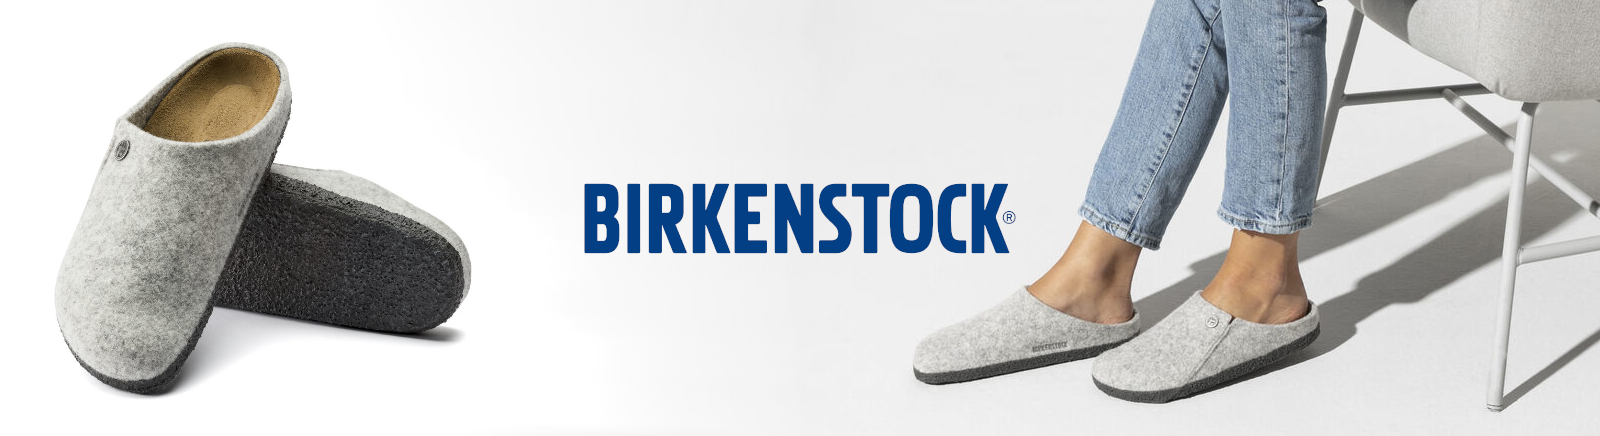 Birkenstock Herrenschuhe online kaufen im Shop von GISY